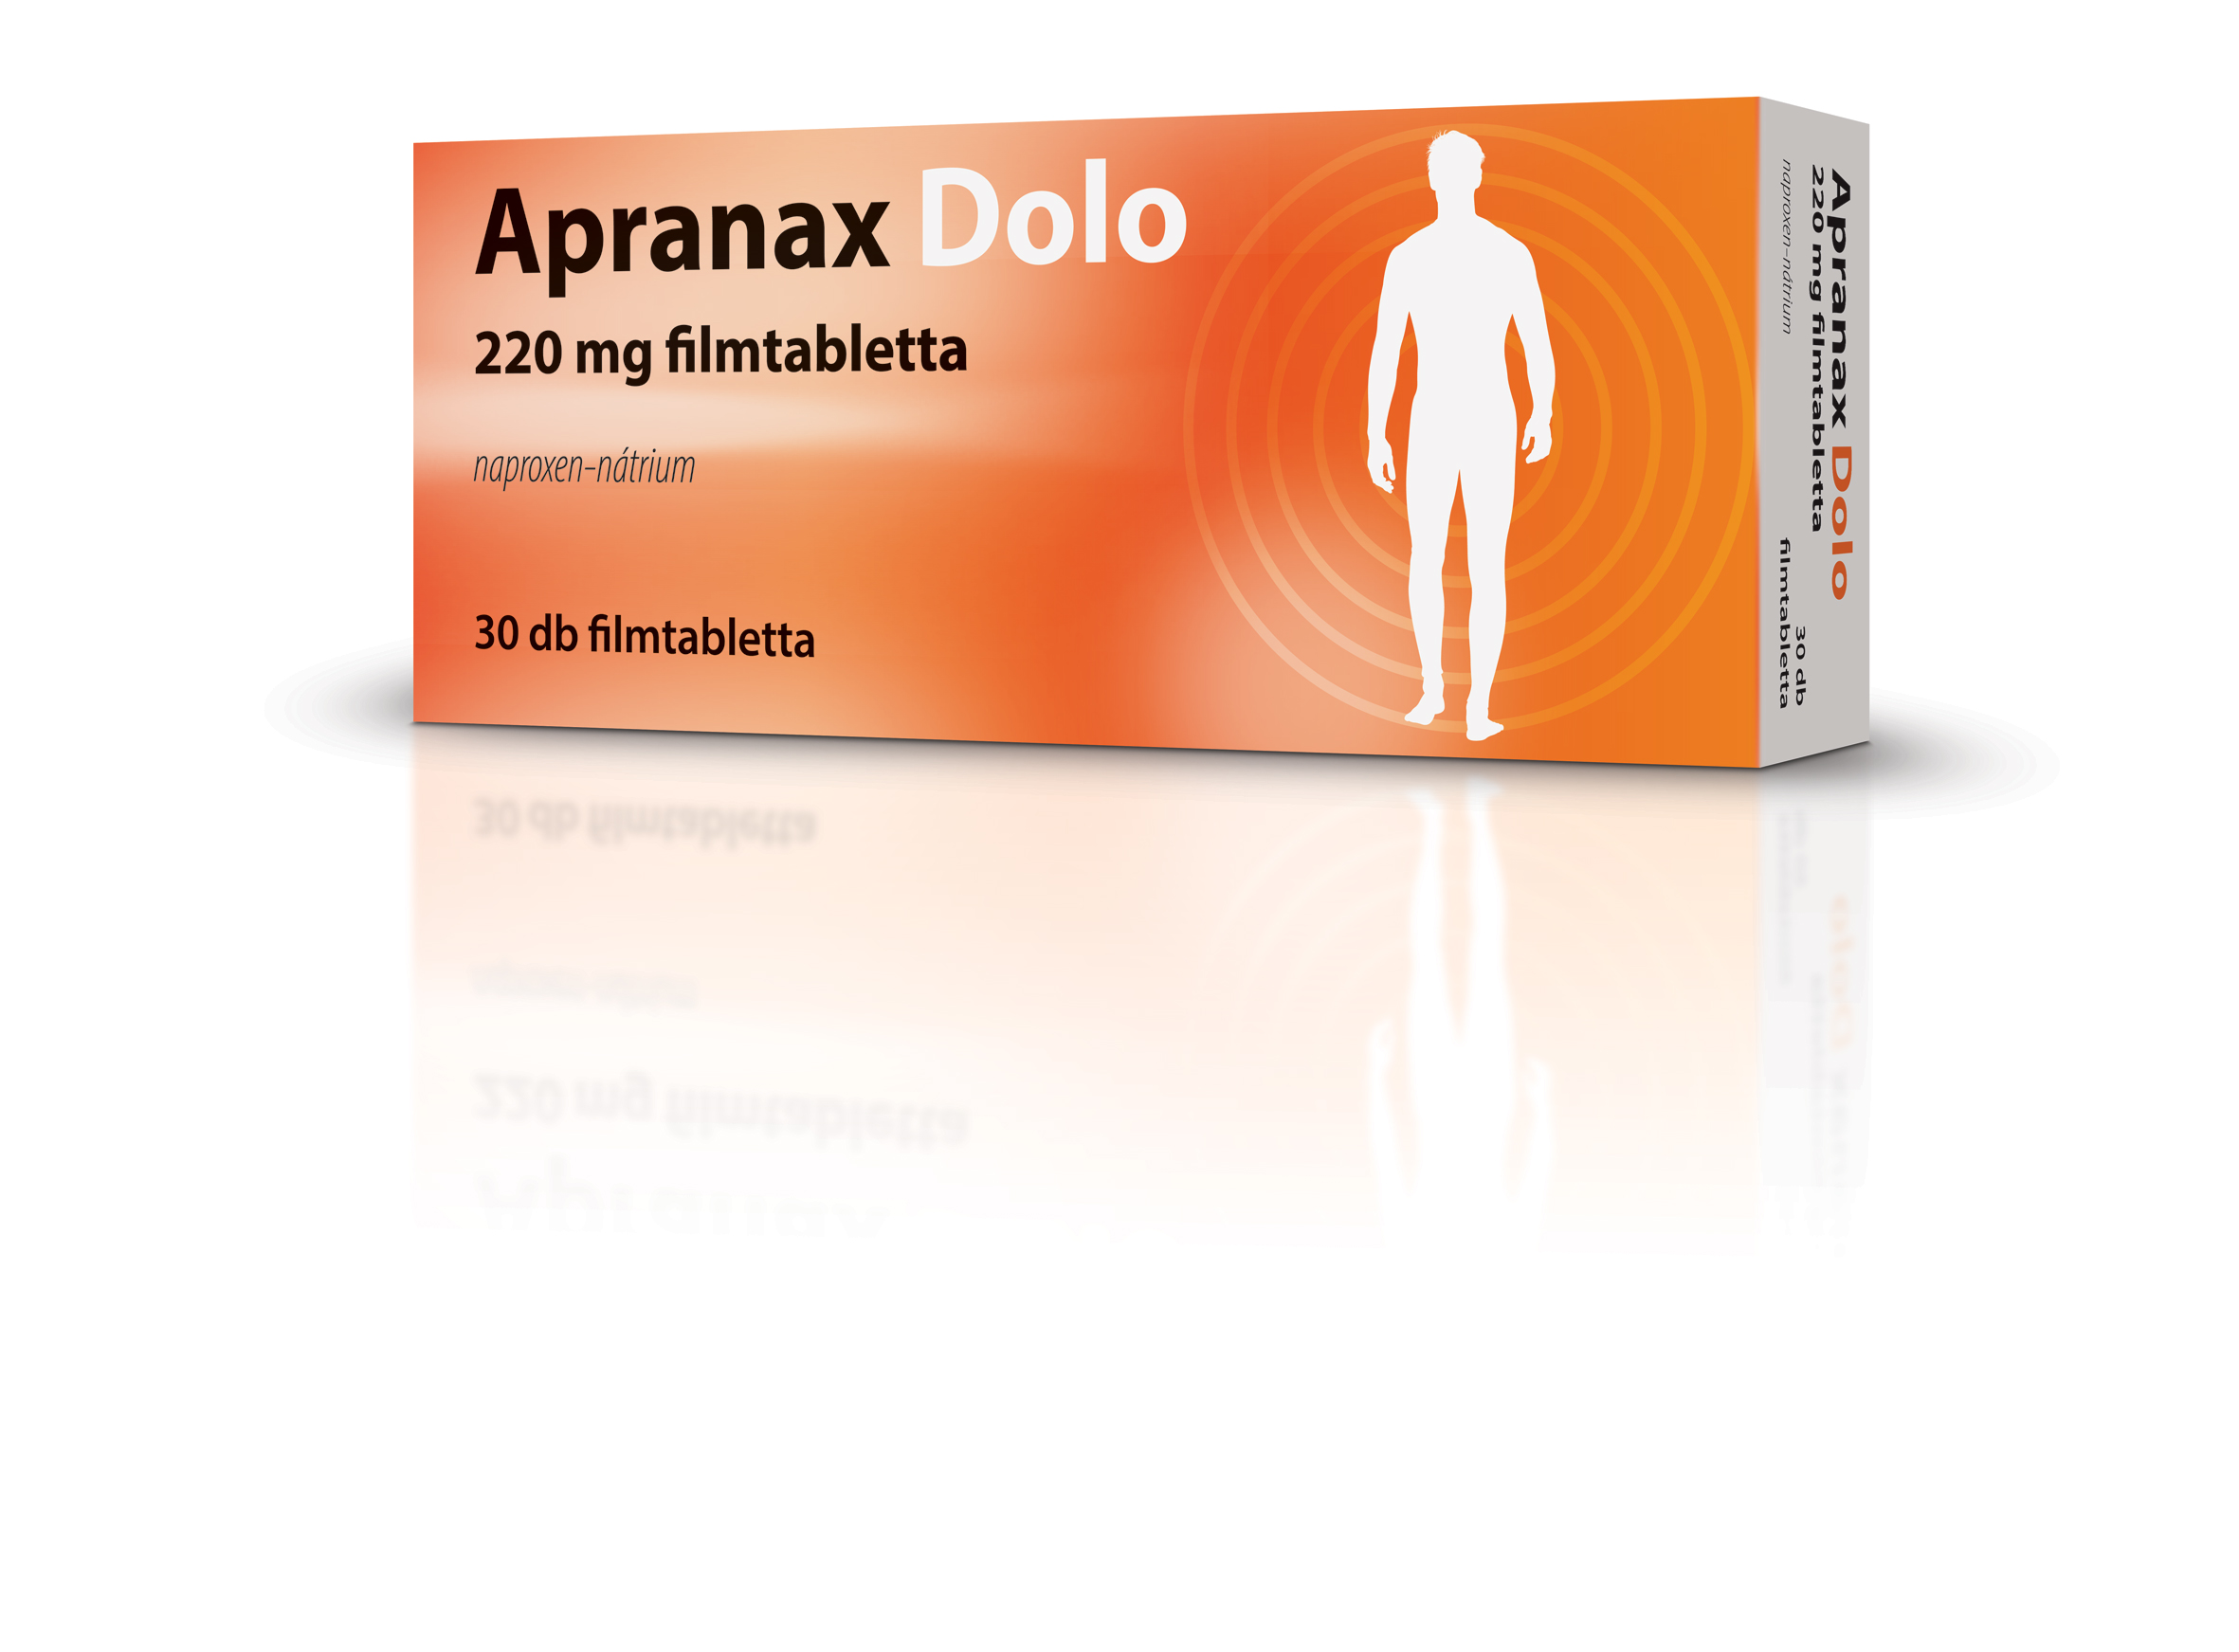 Apranax Dolo 220 mg filmtabletta 